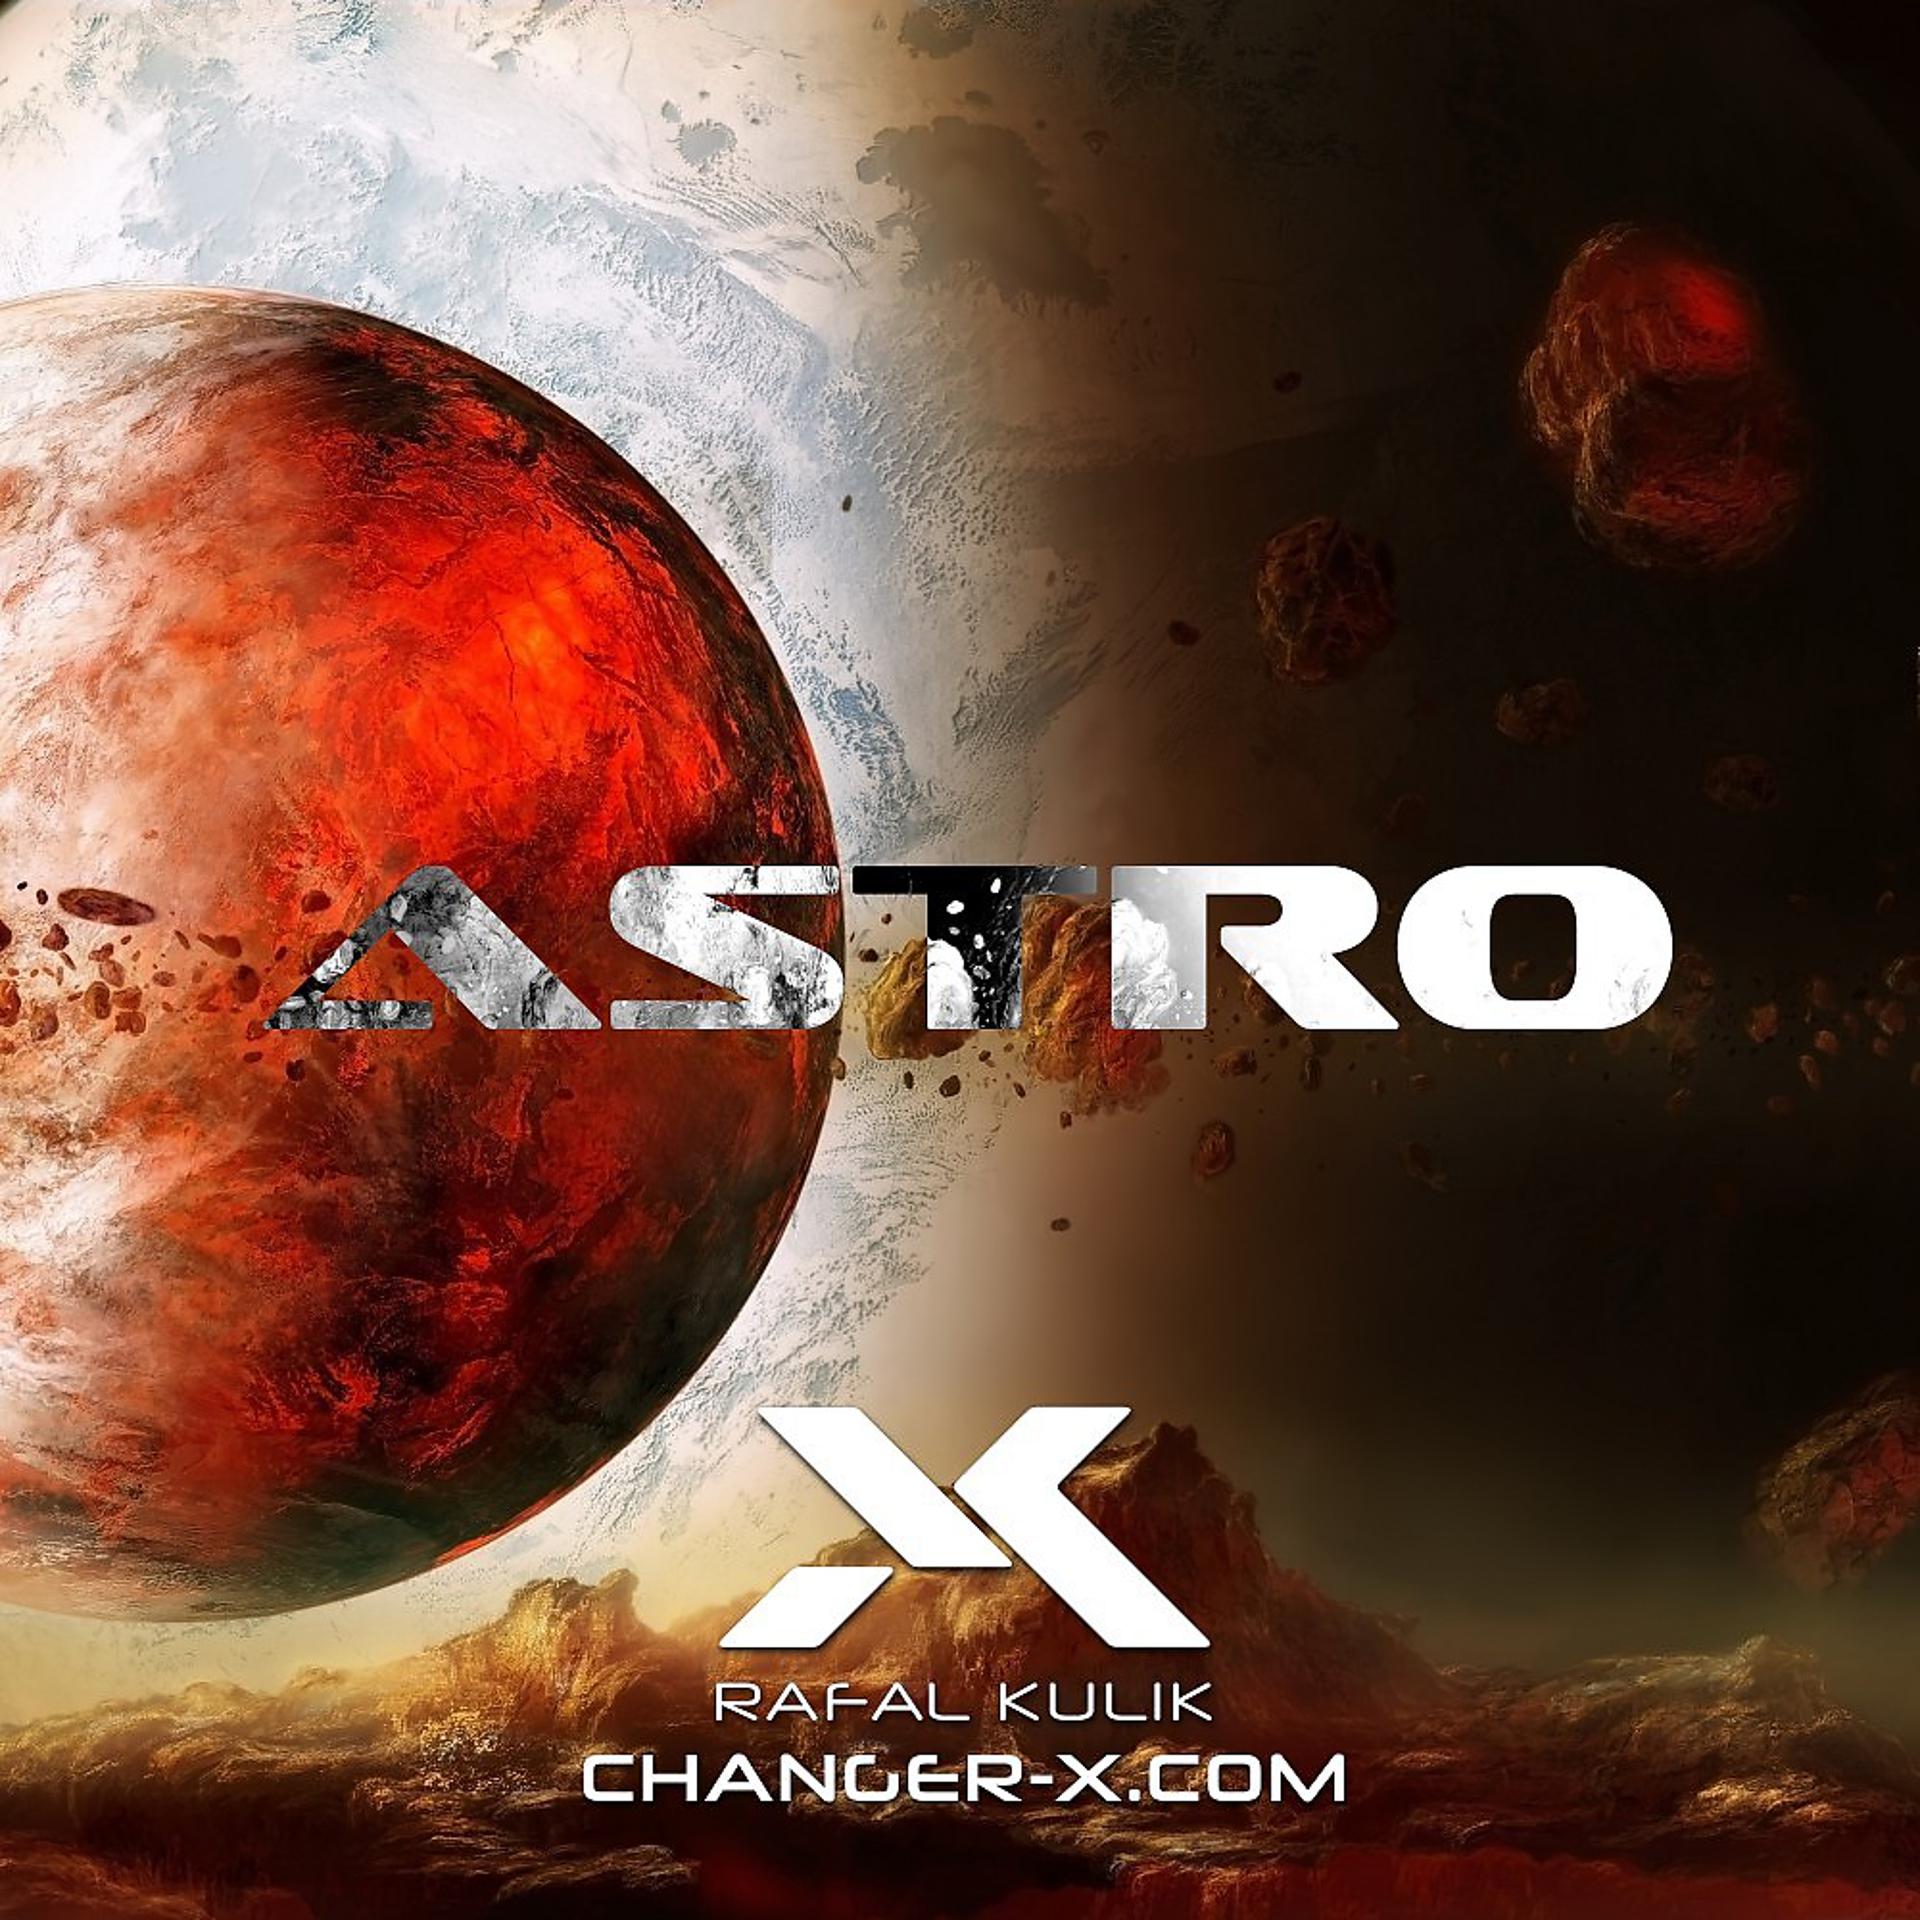 Постер альбома Astro